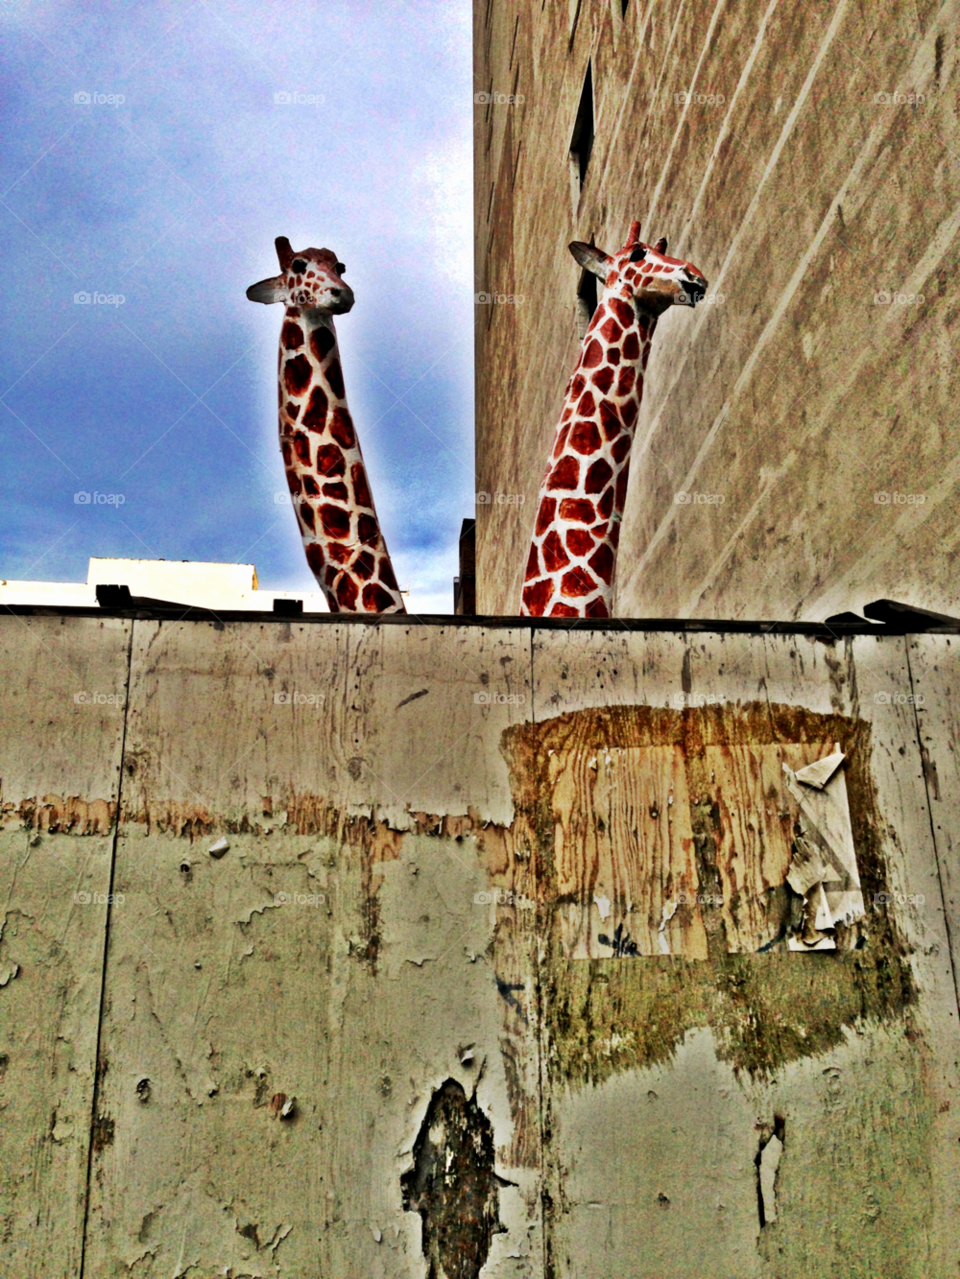 urban street art construction site giraffe by paul.reilly546